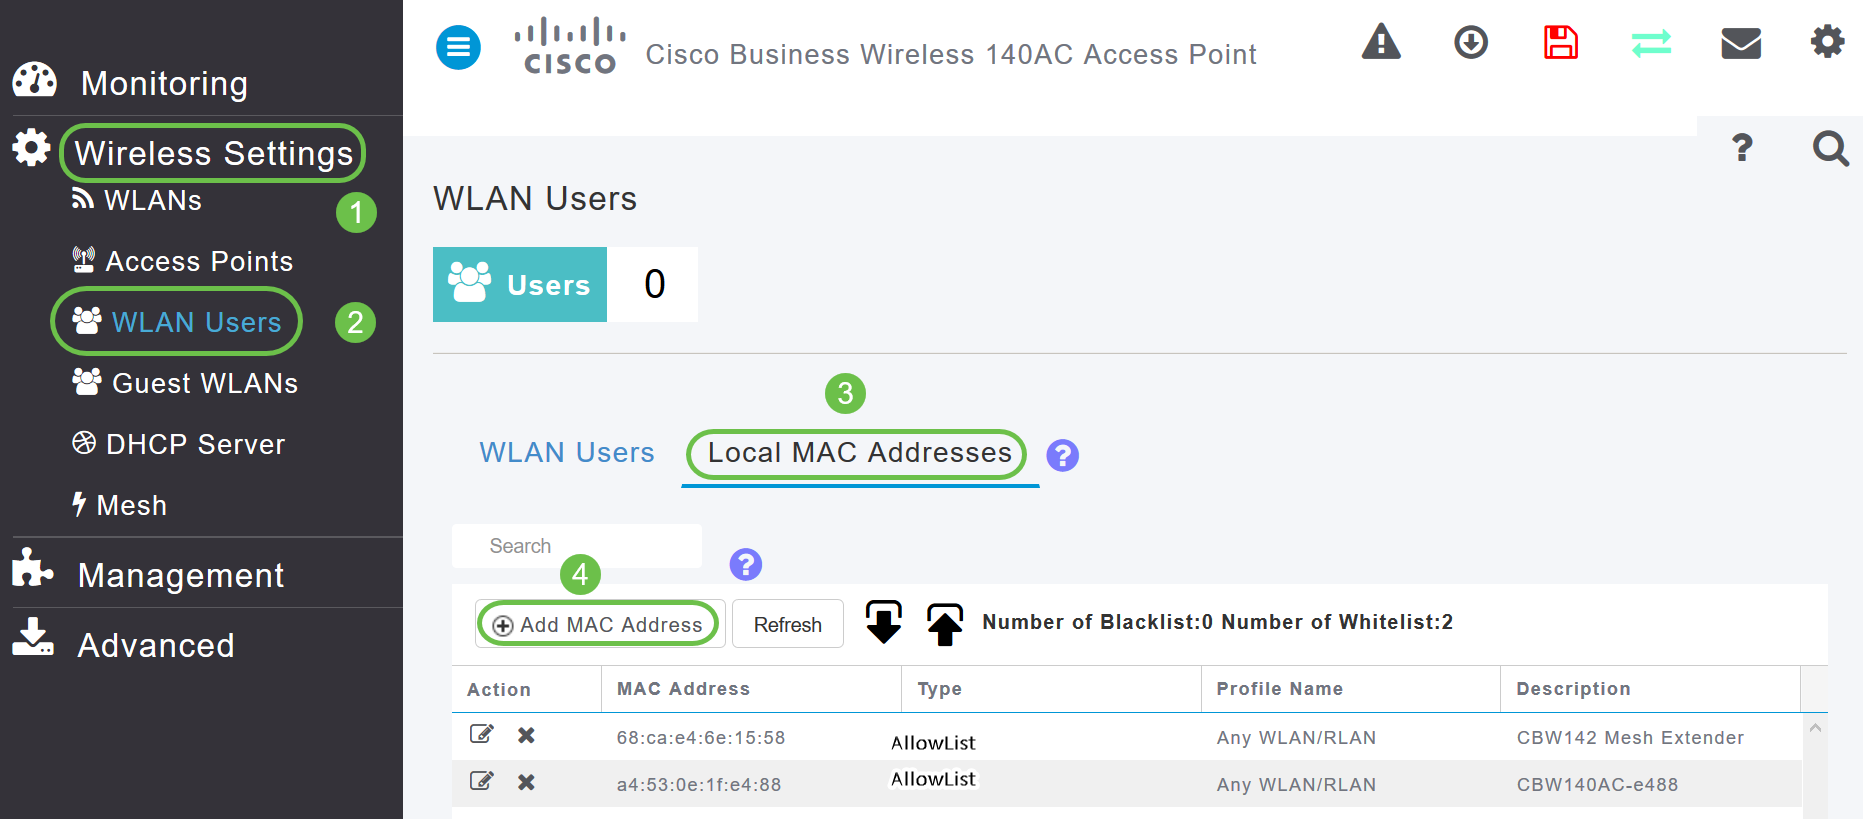 1. Select Wireless Settings 2. Select WLAN Users 3. Select Local MAC Addresses 4. Select Add MAC Address. 